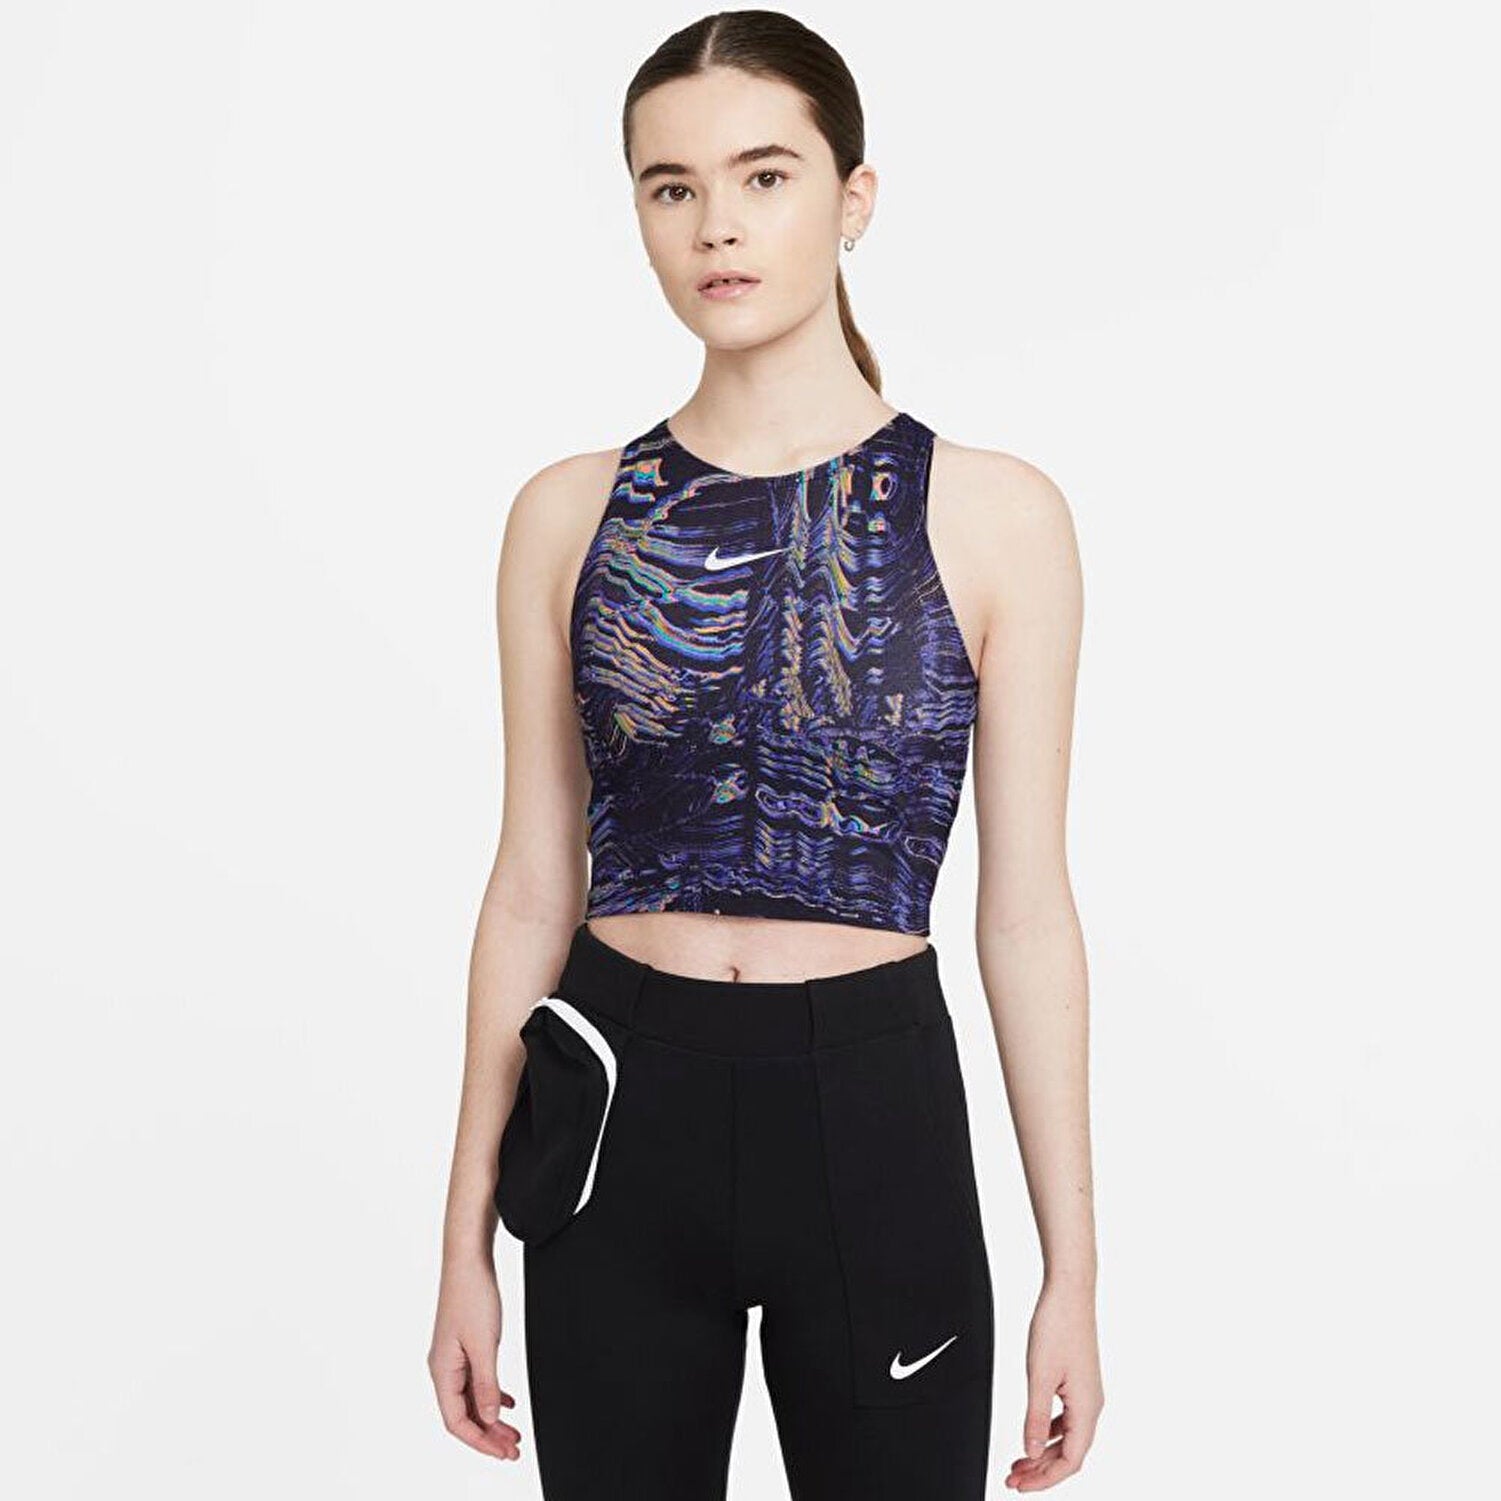 Nike printed sports bra